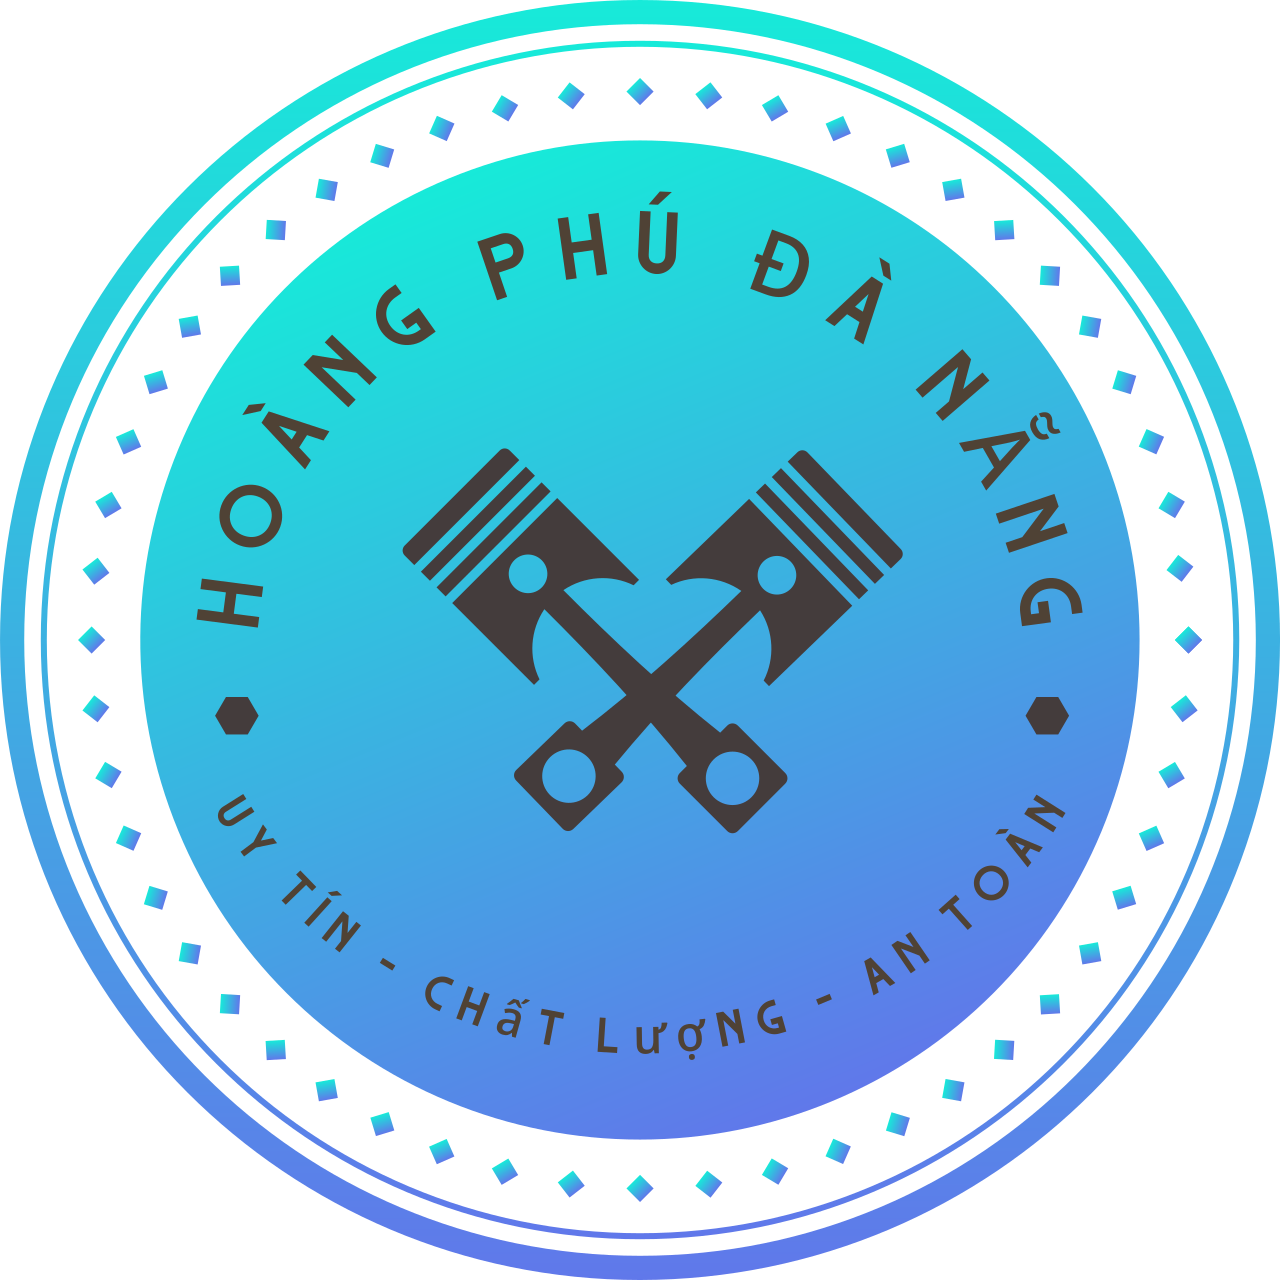 HOÀNG PHÚ ĐÀ NẴNG's web page